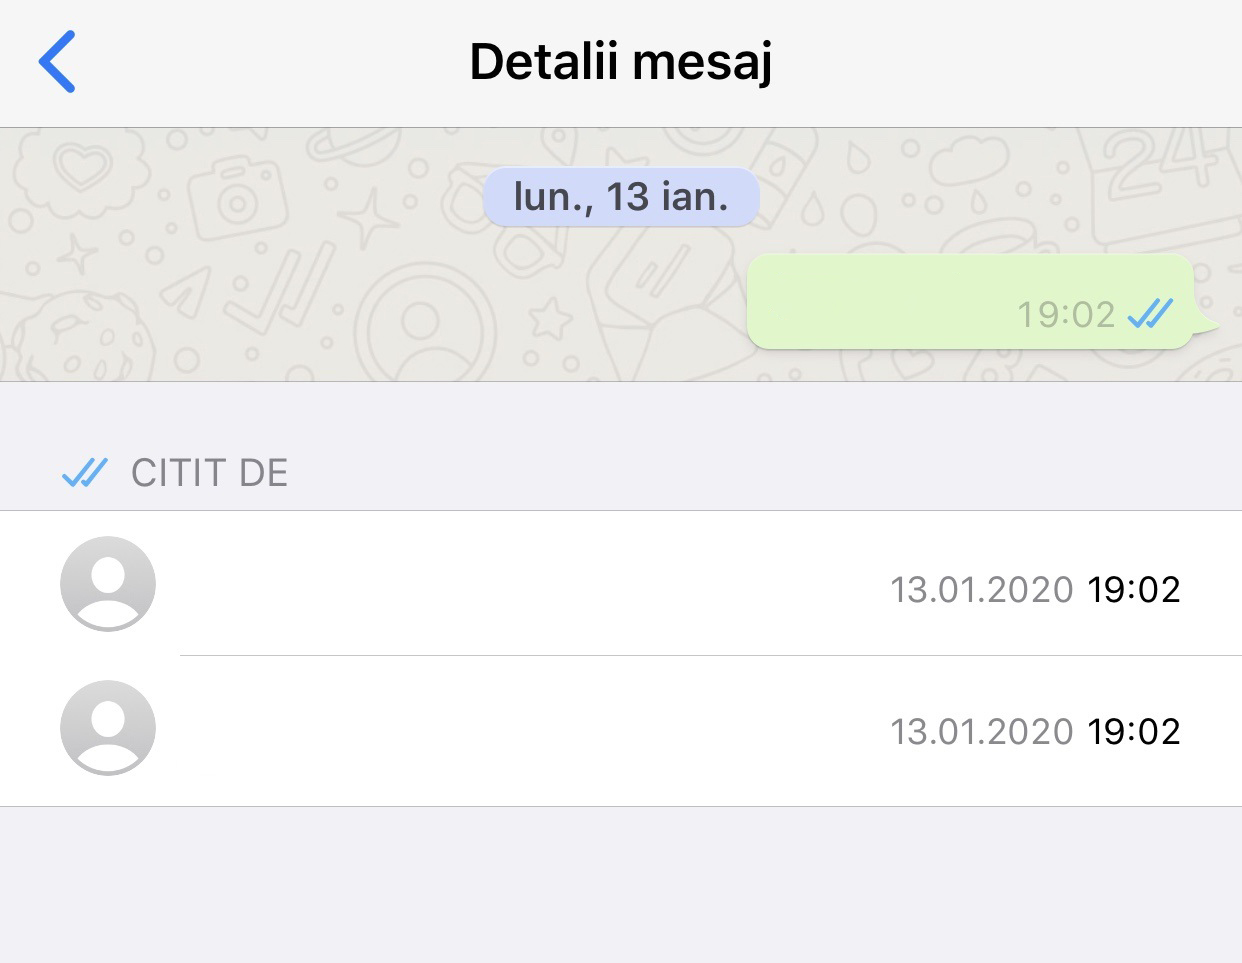 Conferme di lettura dei messaggi di gruppo whatsapp